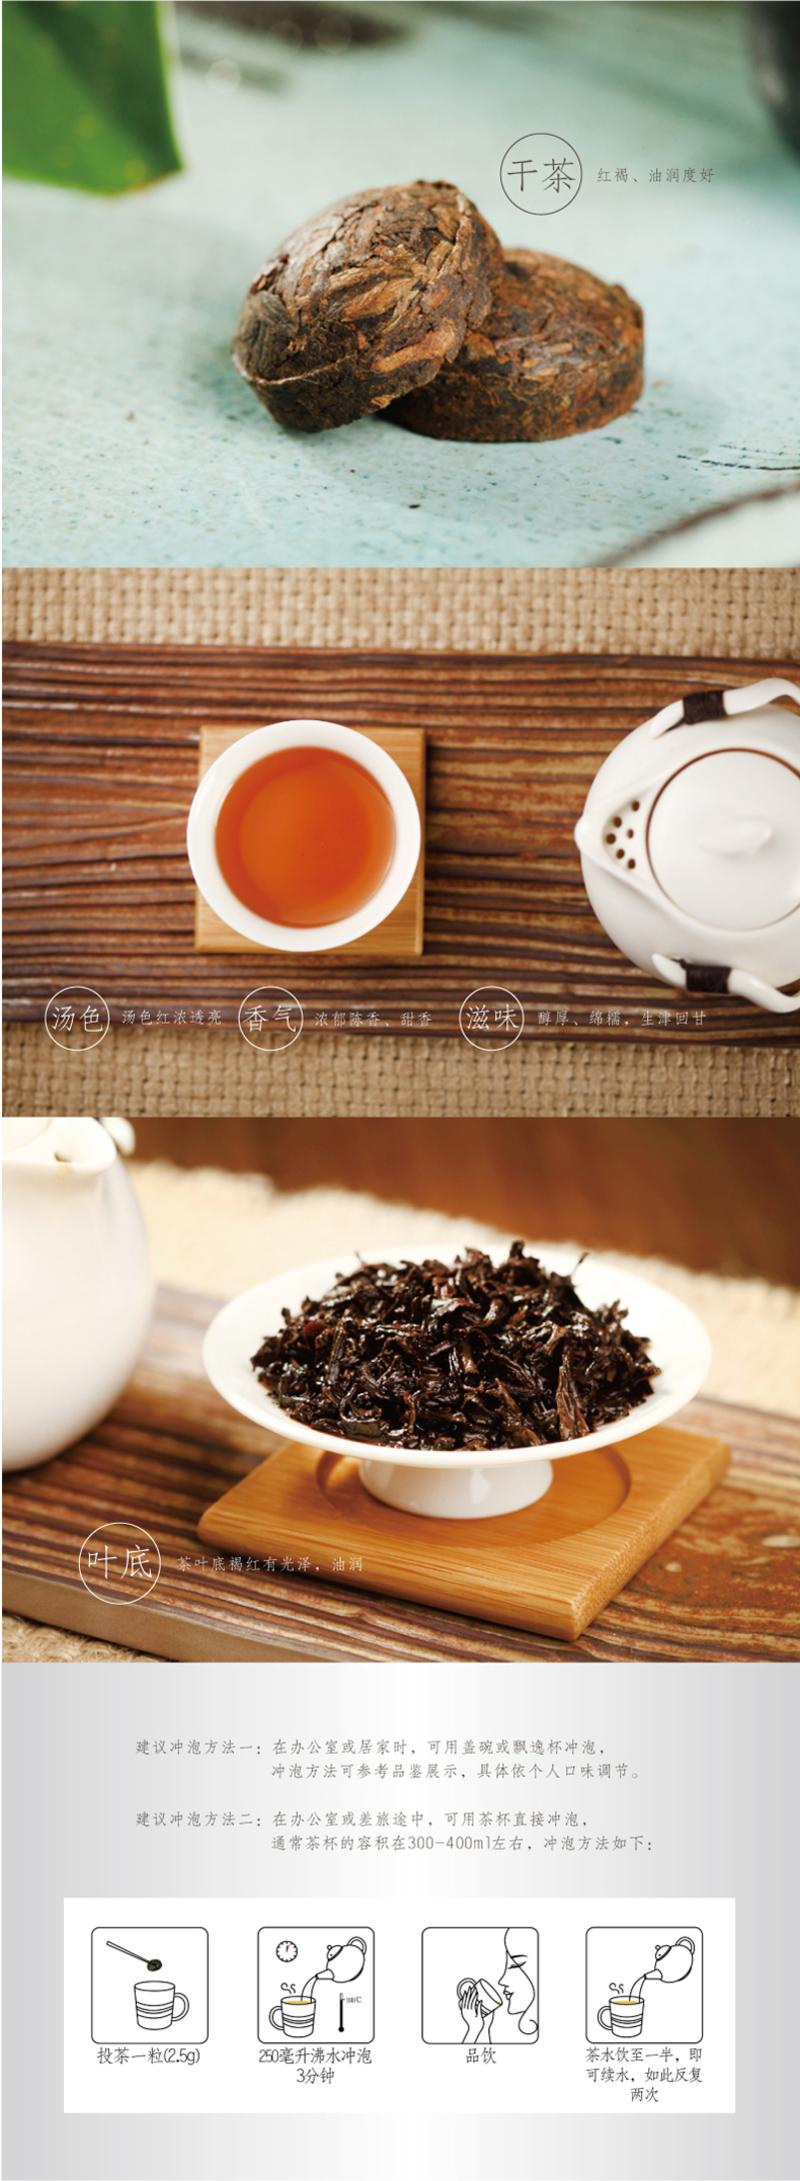 祥源茶/SUNRIVER TEA 正宗云南普洱熟茶 迷你珠系列小沱茶